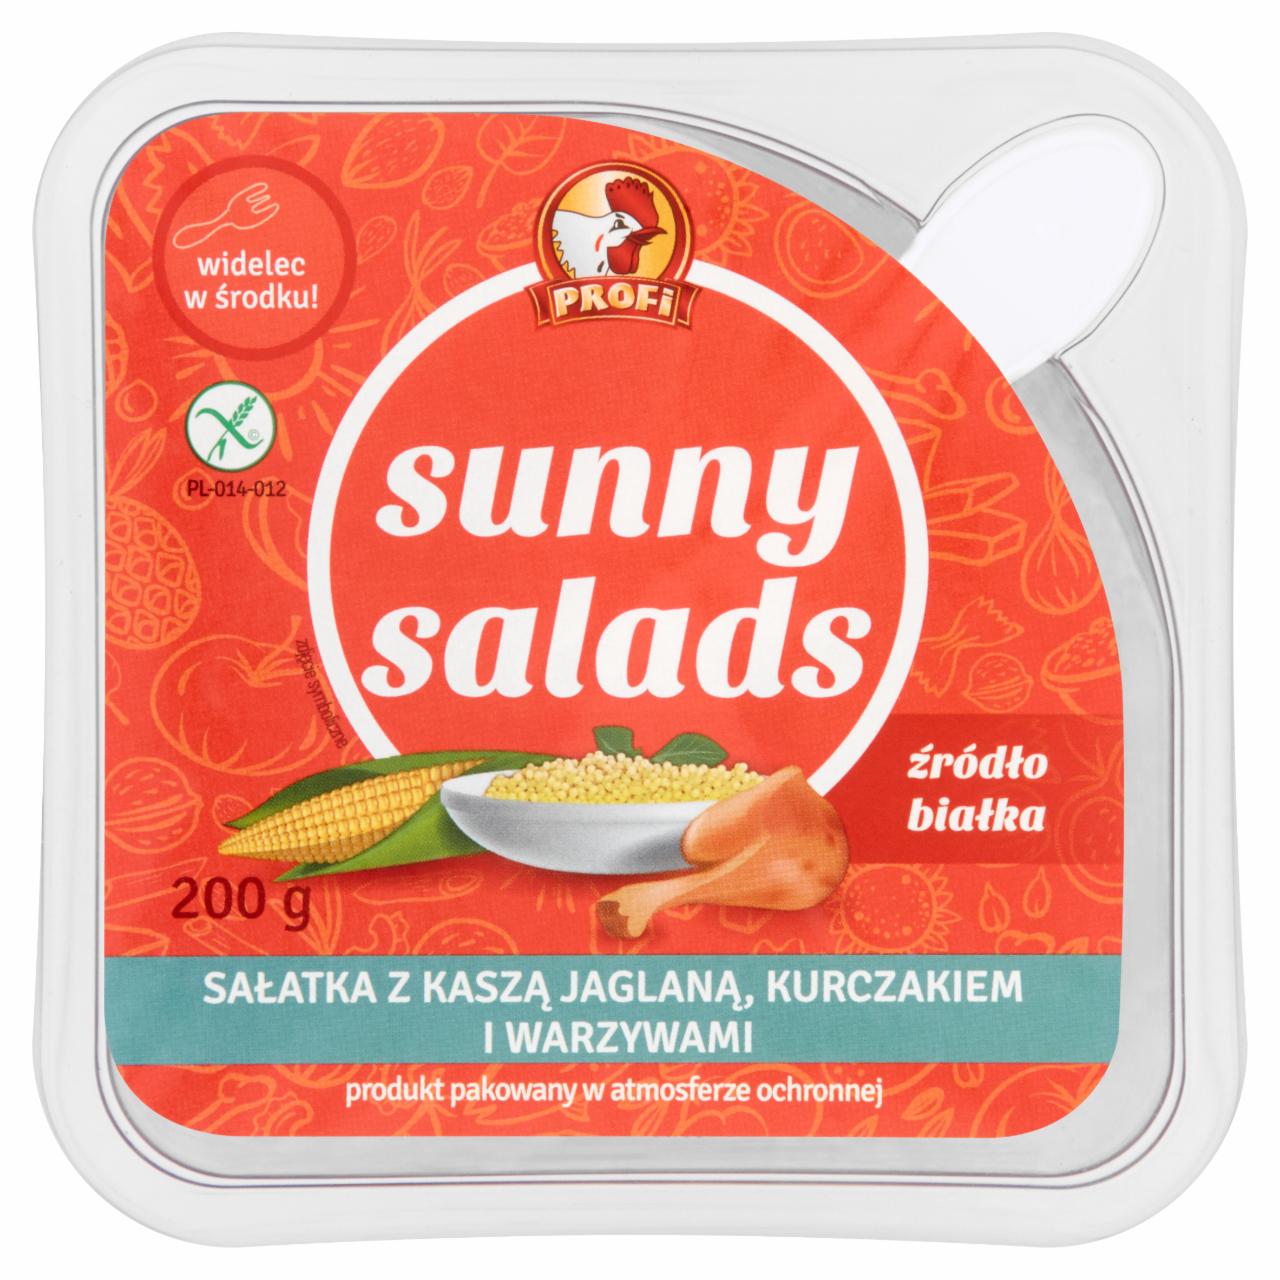 Zdjęcia - Profi Sunny Salads Sałatka z kaszą jaglaną kurczakiem i warzywami 200 g